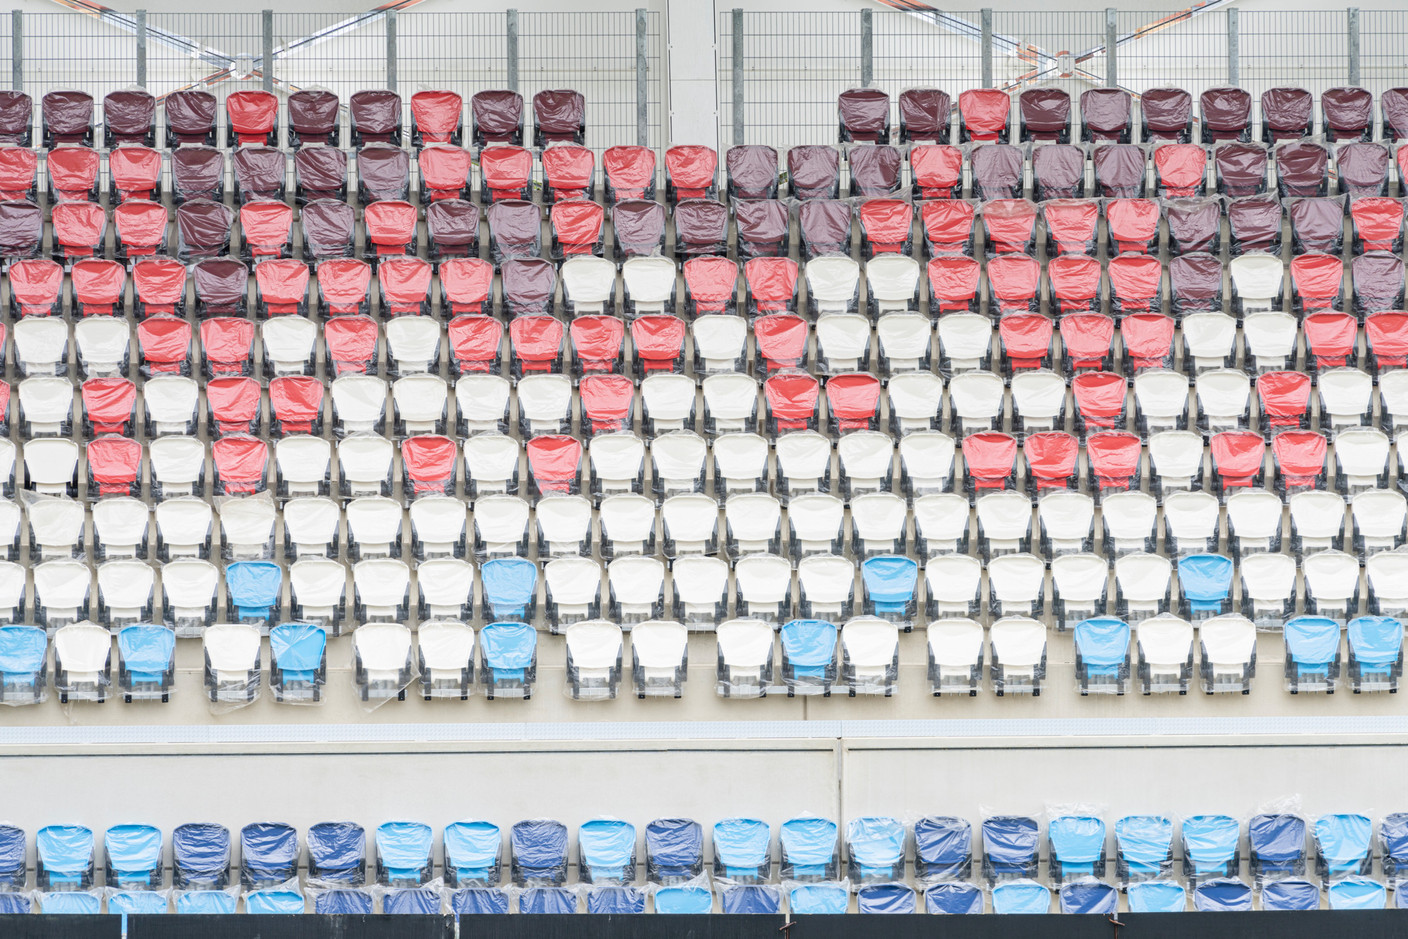 Le stade de football et de rugby comprend un terrain de jeu avec 9.385 places assises couvertes pour les spectateurs. (Photo: Caroline Martin)